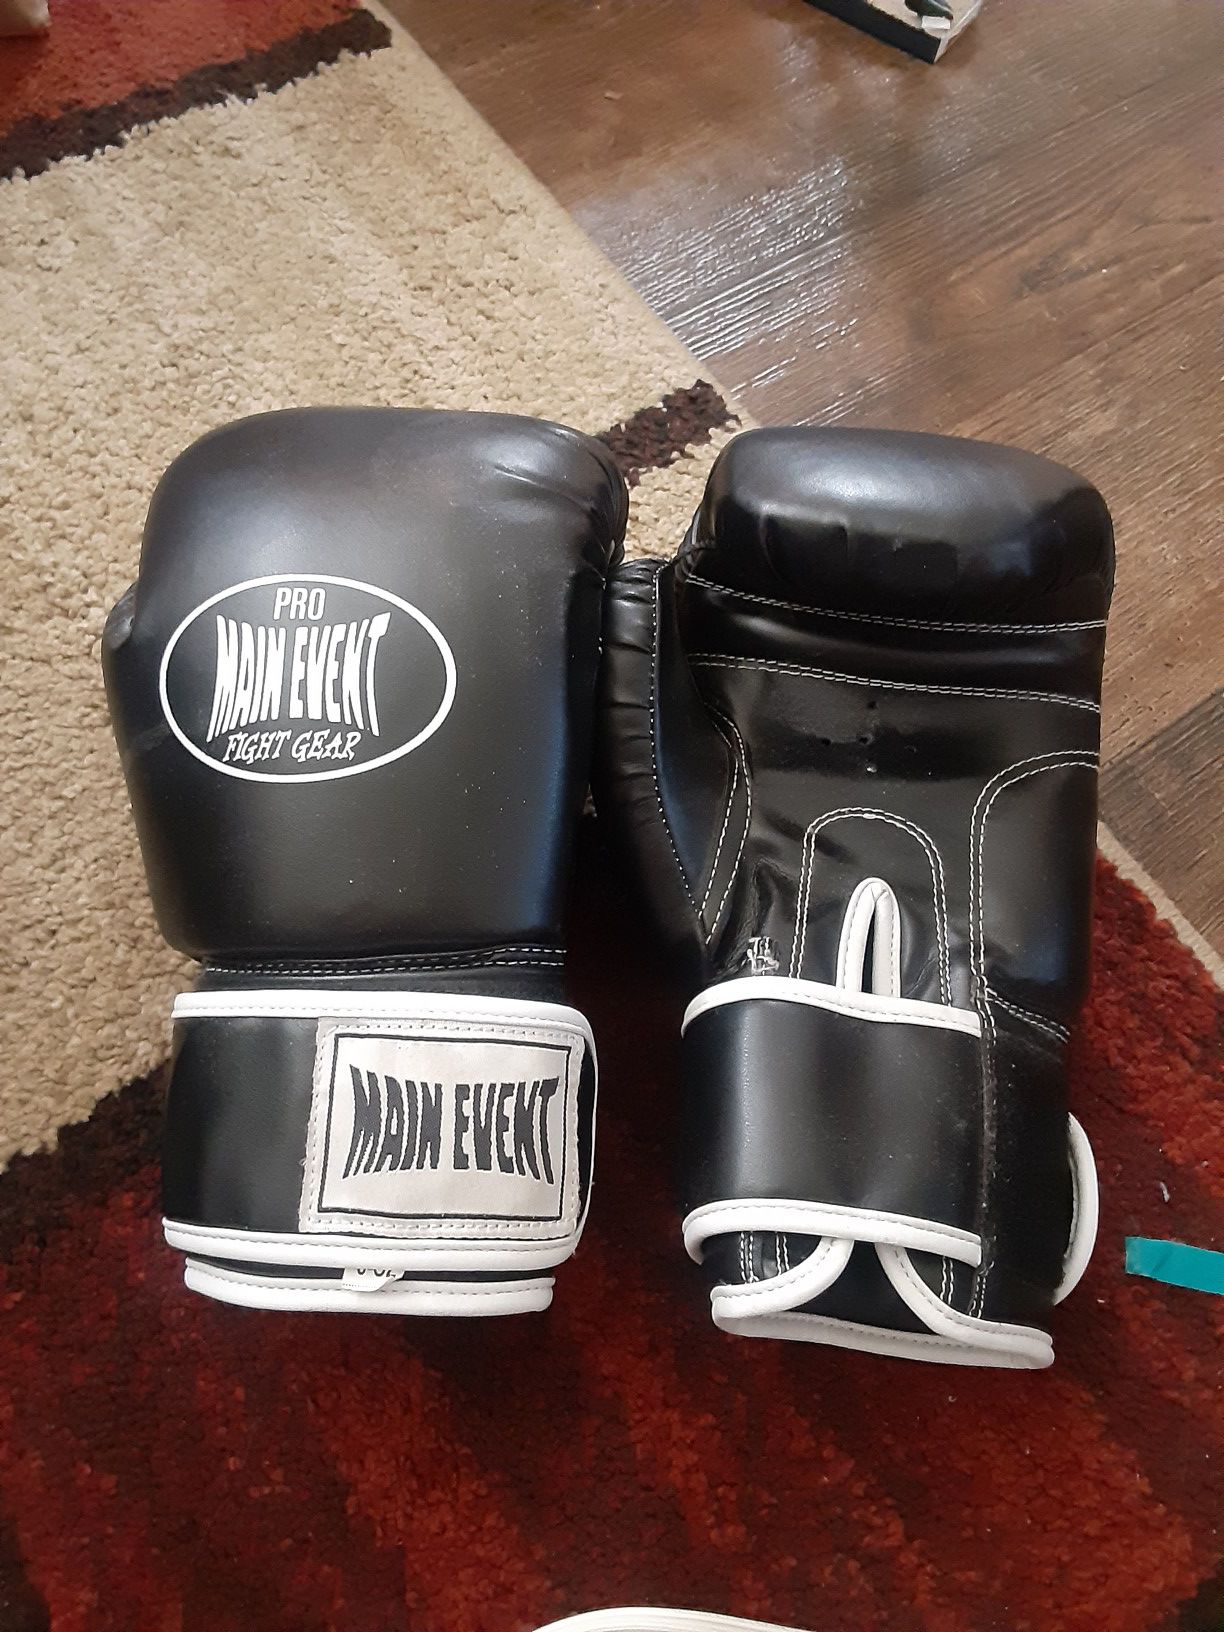 Pro, everlast, ringside boxing gloves